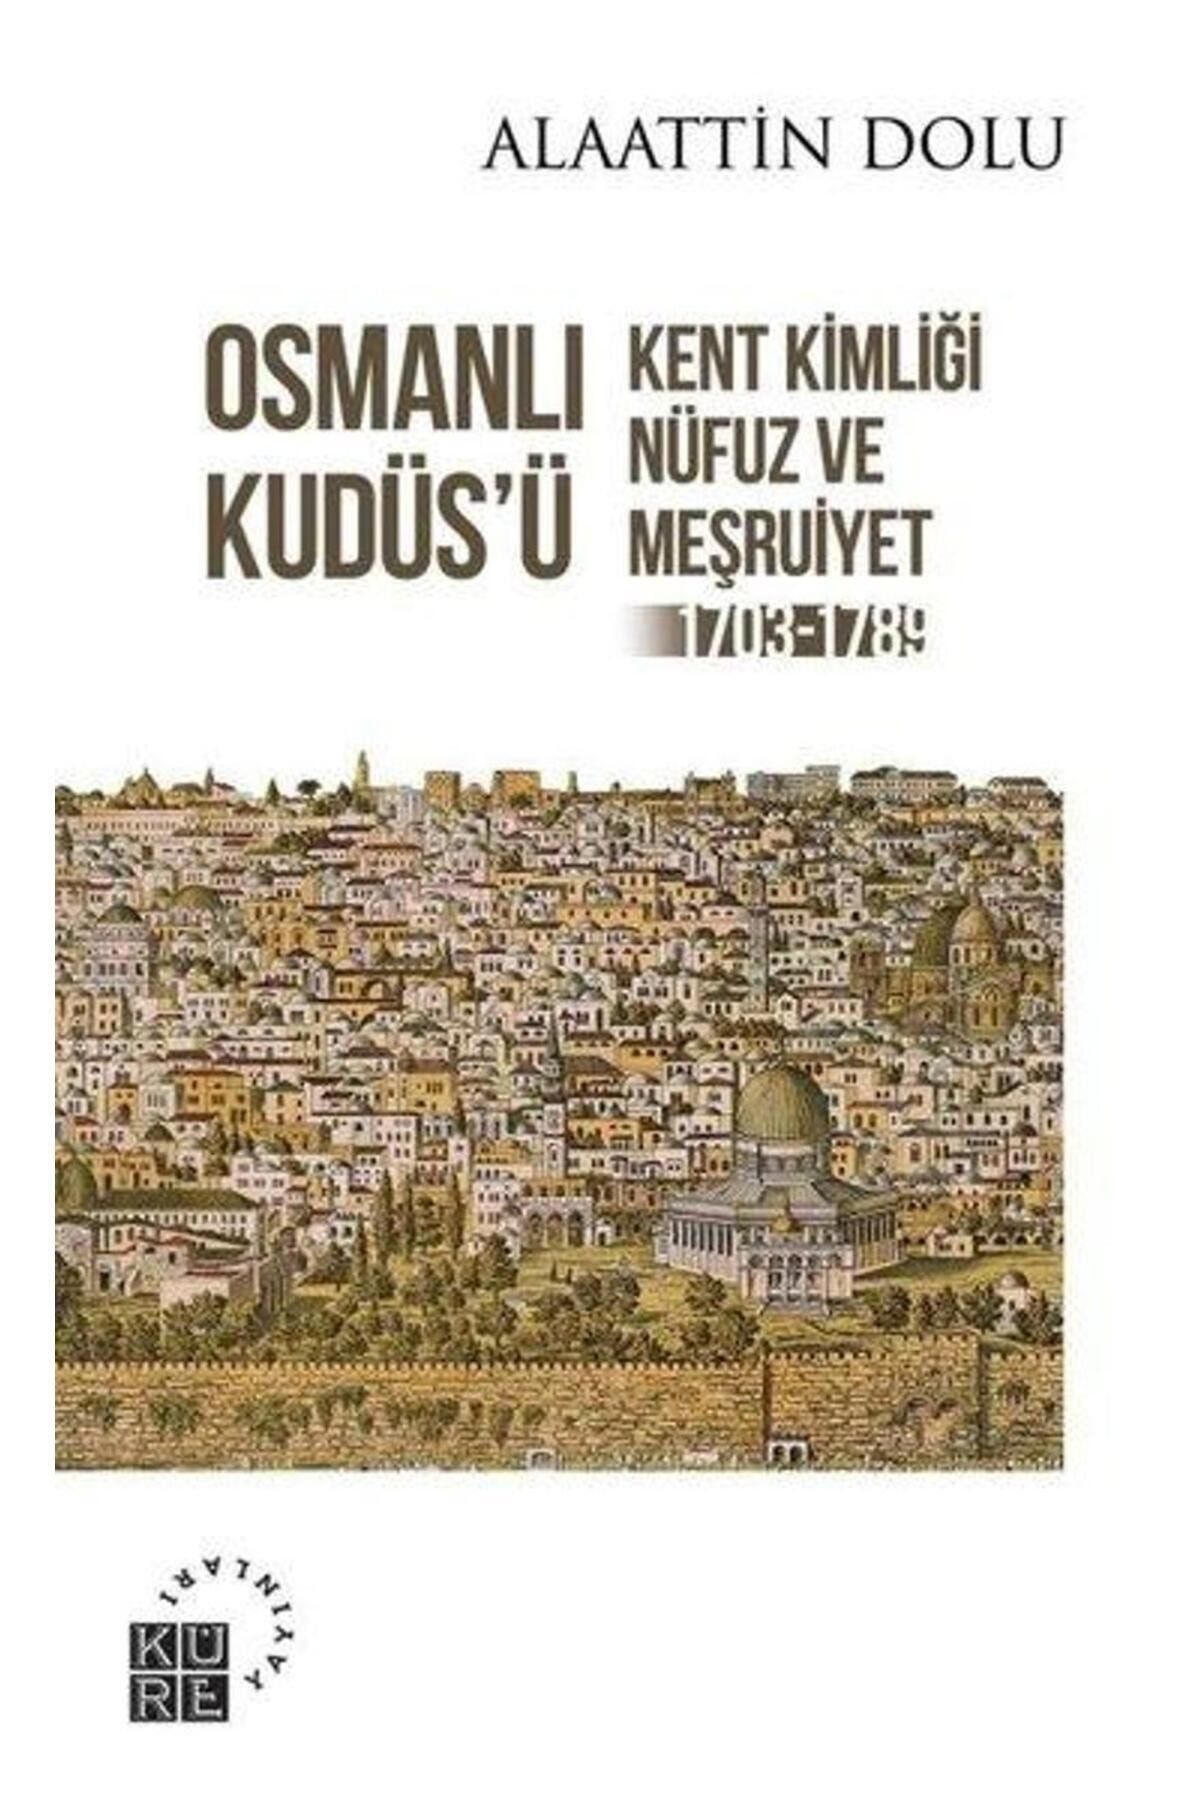 Küre Yayınları Osmanlı Kudüsü